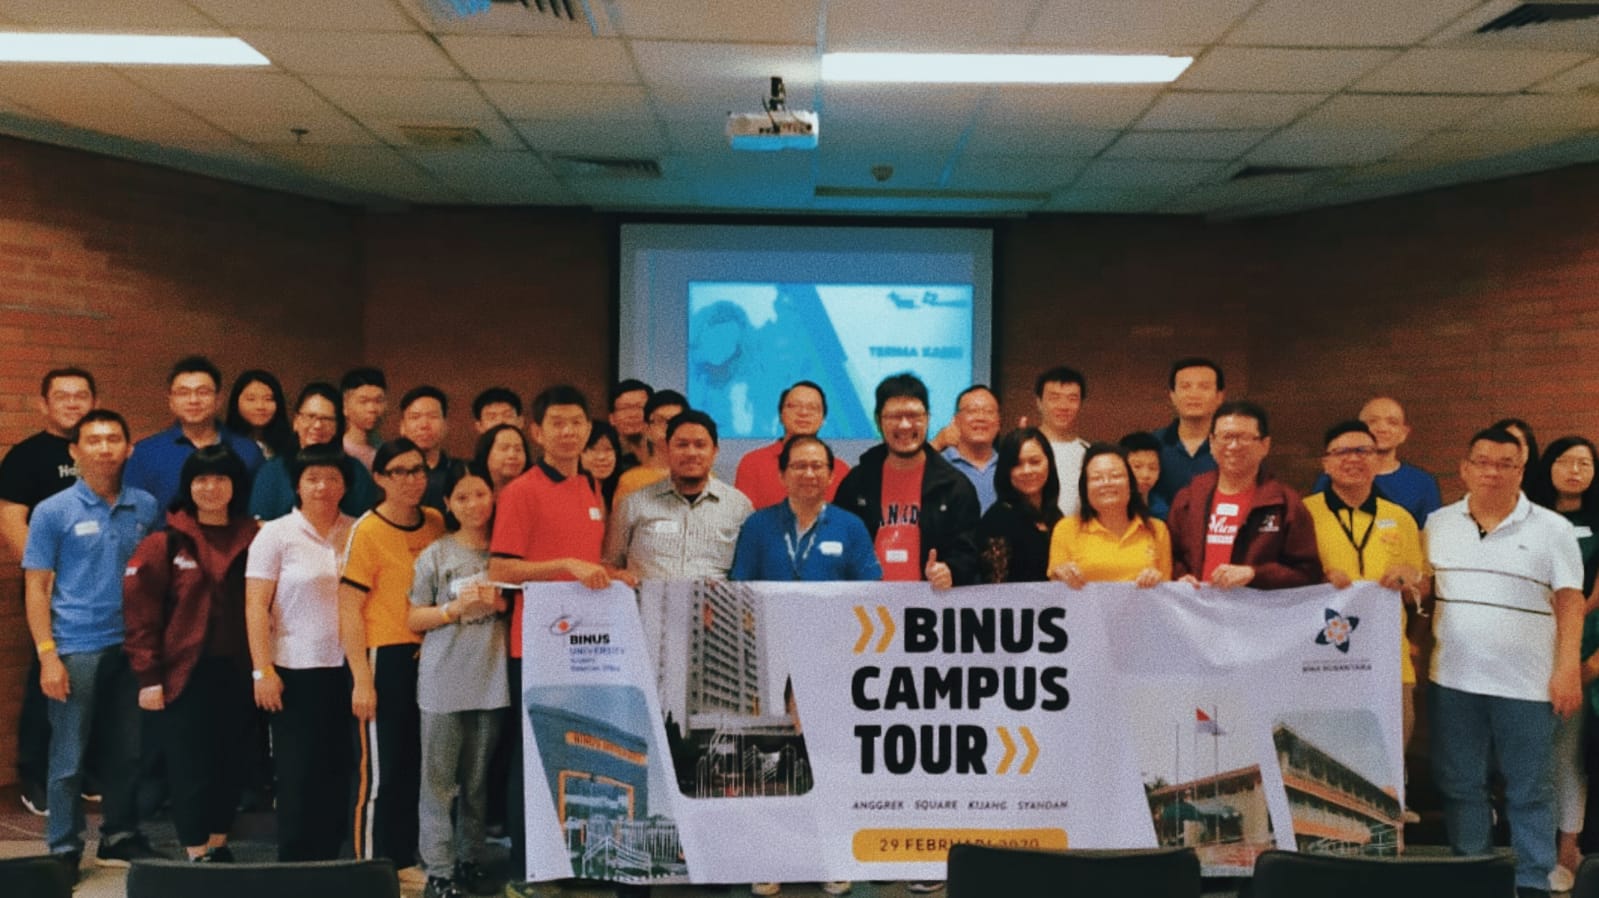 Binus Campus Tour